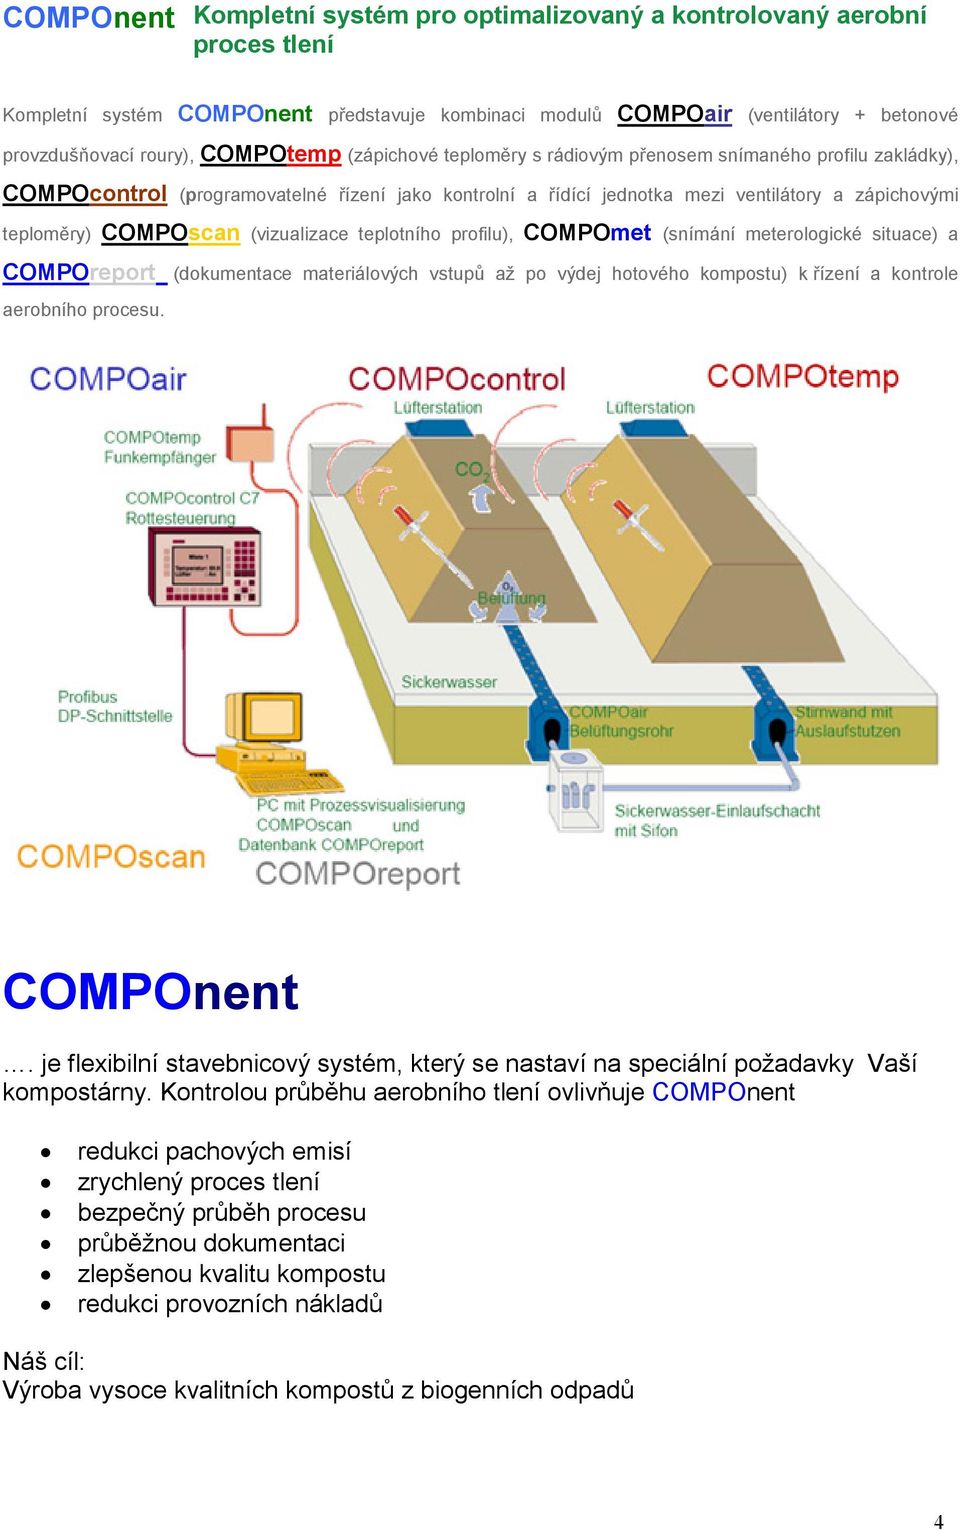 COMPOscan (vizualizace teplotního profilu), COMPOmet (snímání meterologické situace) a COMPOreport (dokumentace materiálových vstupů až po výdej hotového kompostu) k řízení a kontrole aerobního